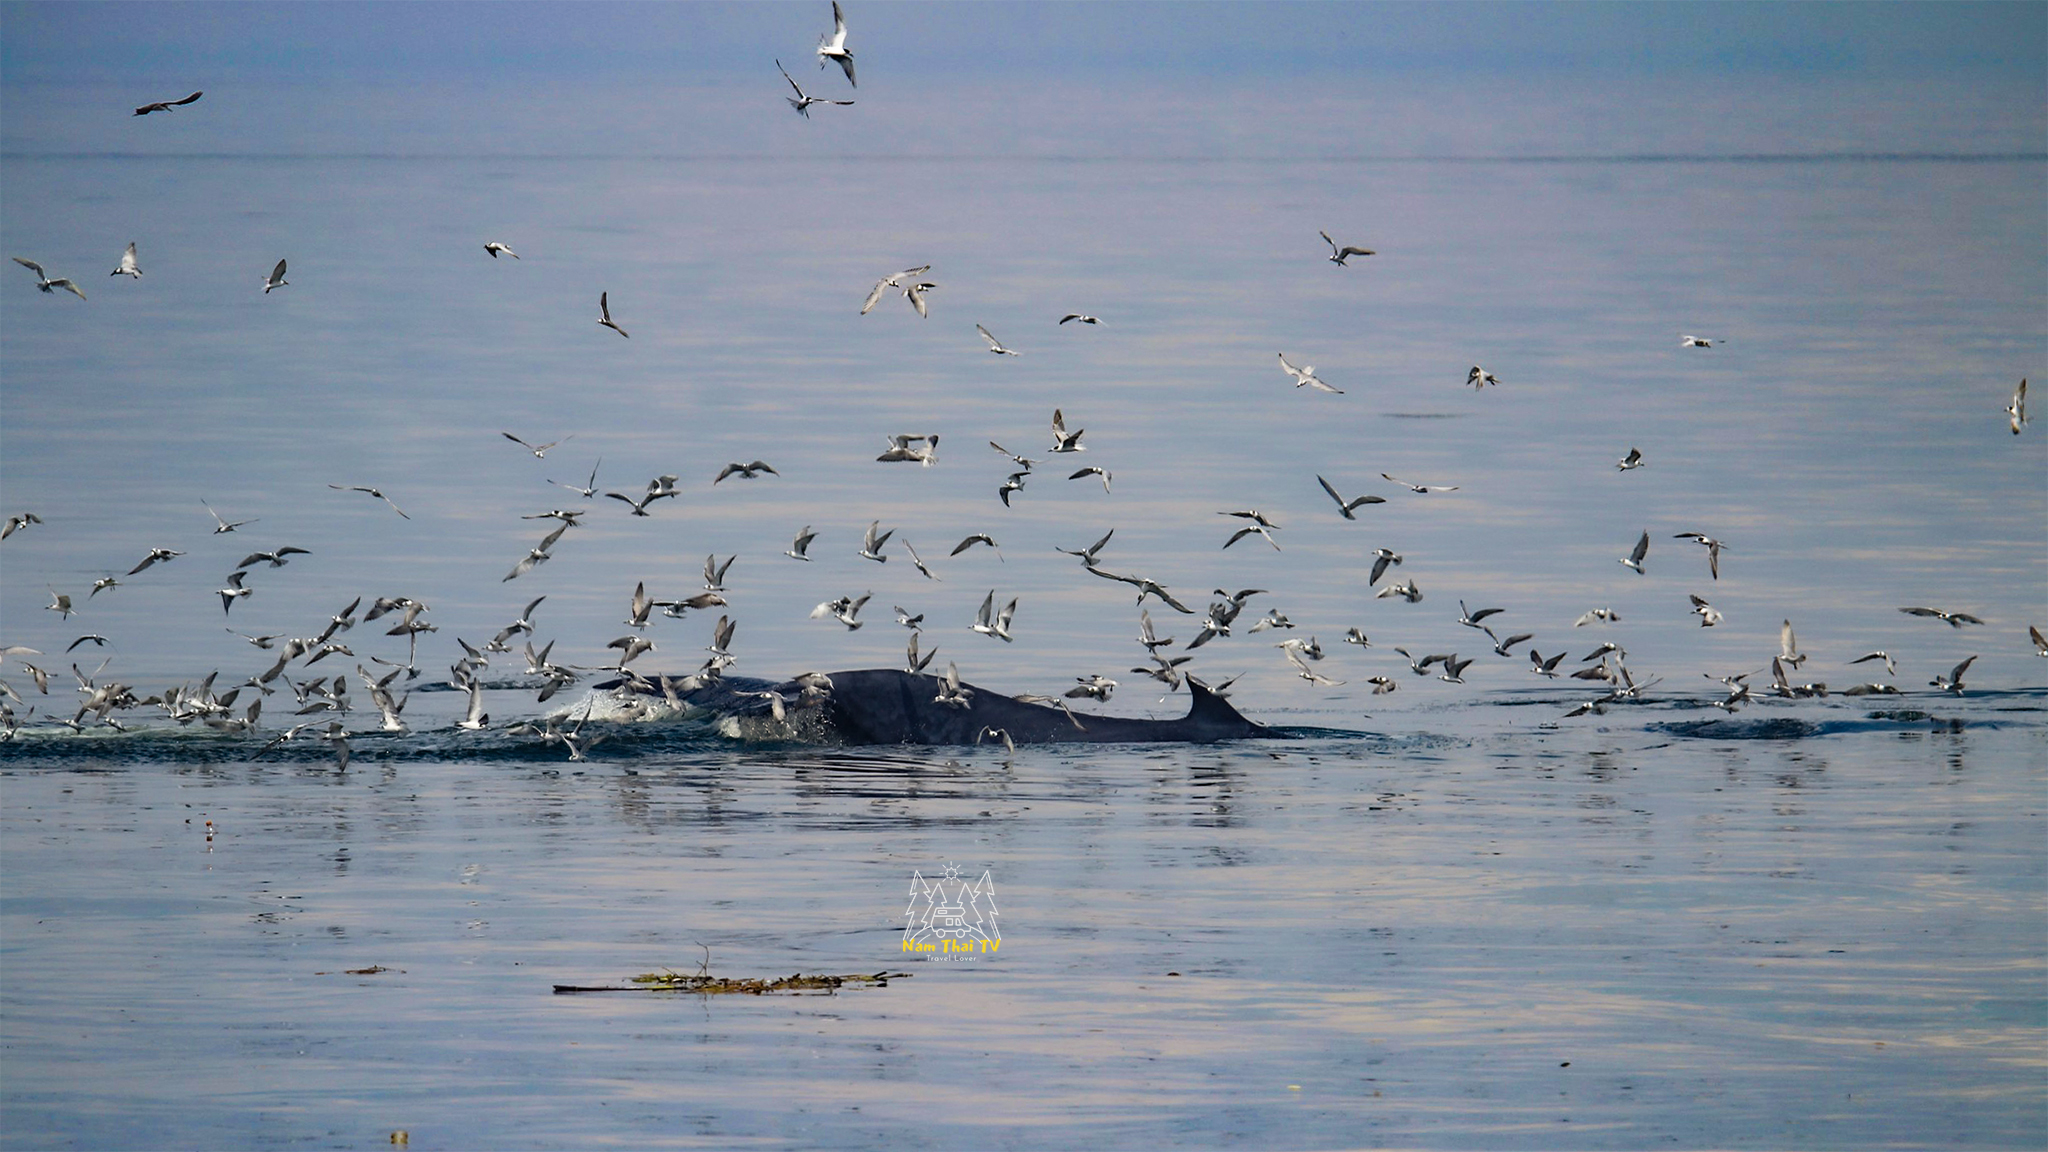 Trải nghiệm ngắm cá voi Bryde hiếm hoi sắp tuyệt chủng ở vịnh Thái Lan